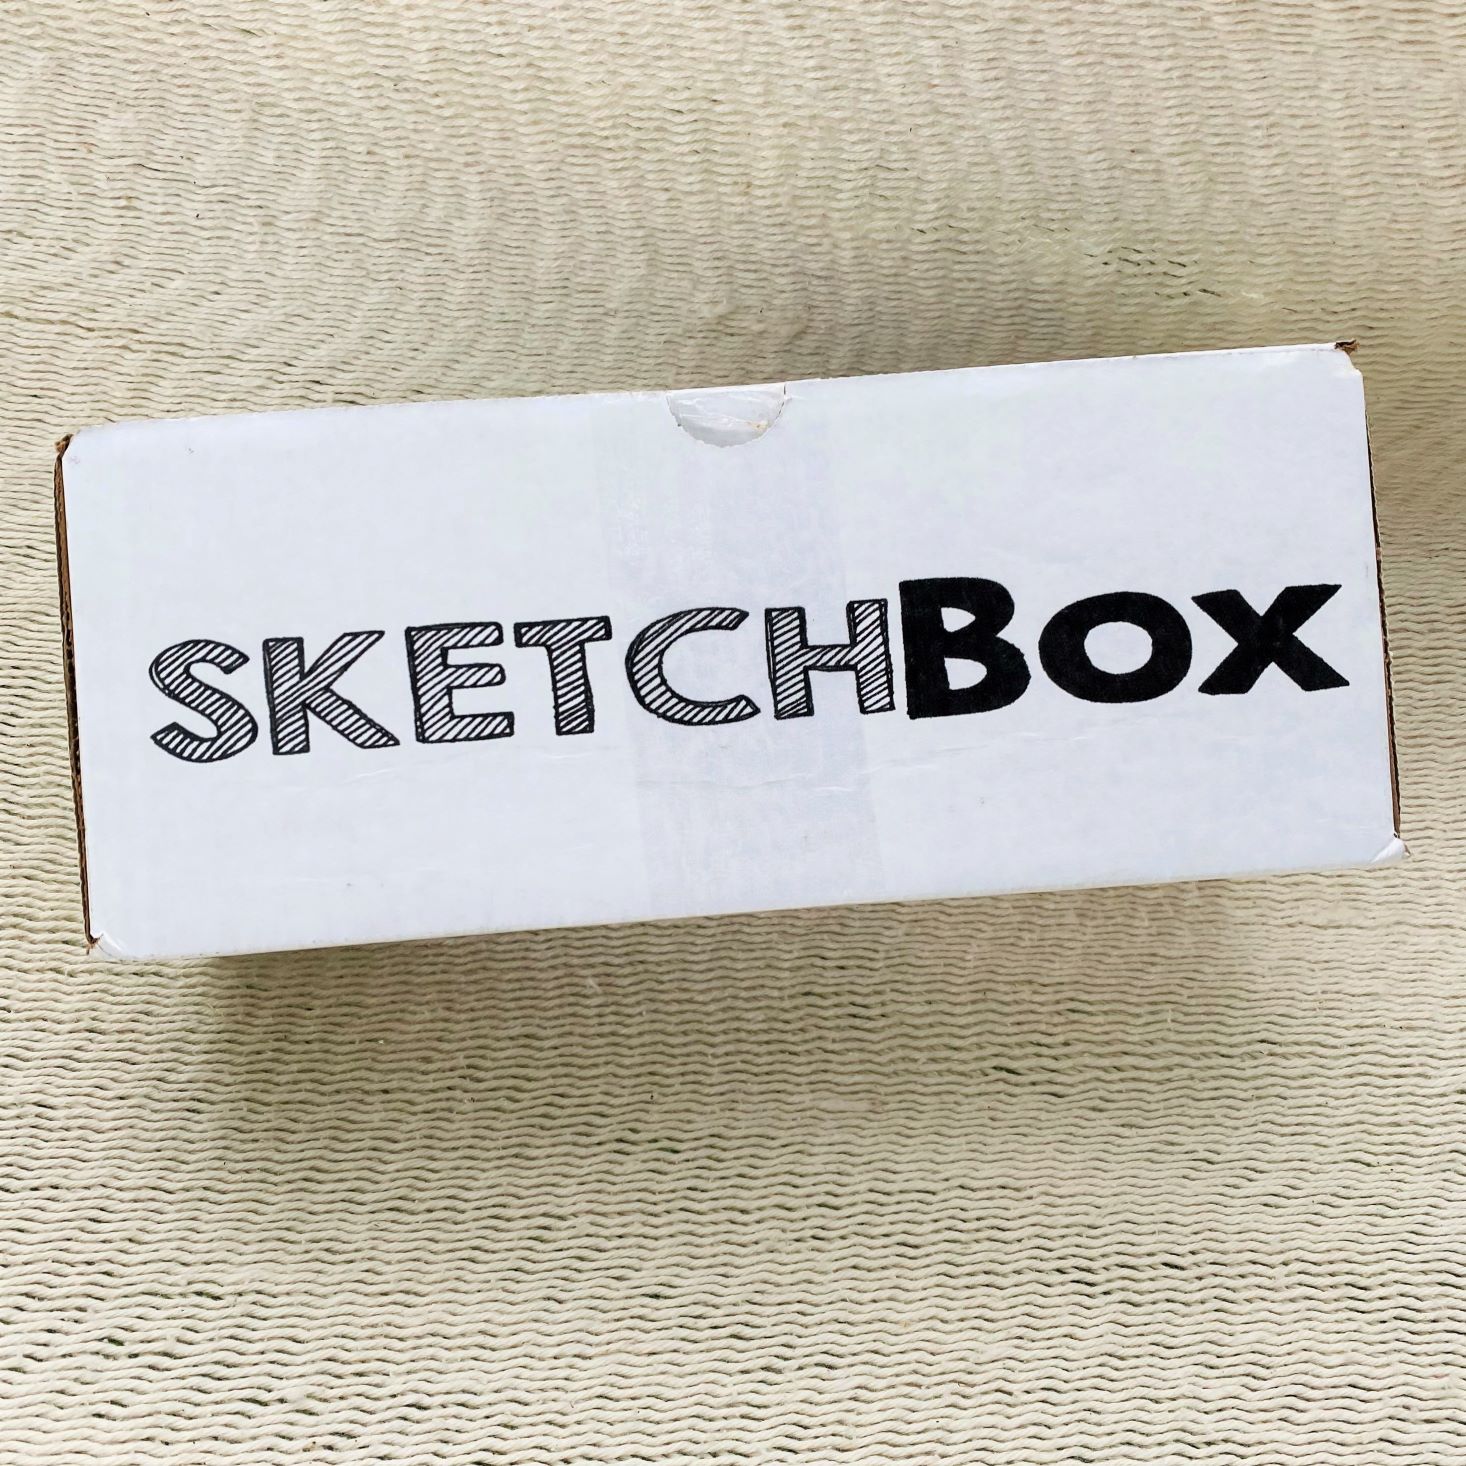 Basic SketchBox Subscription – ShopSketchBox